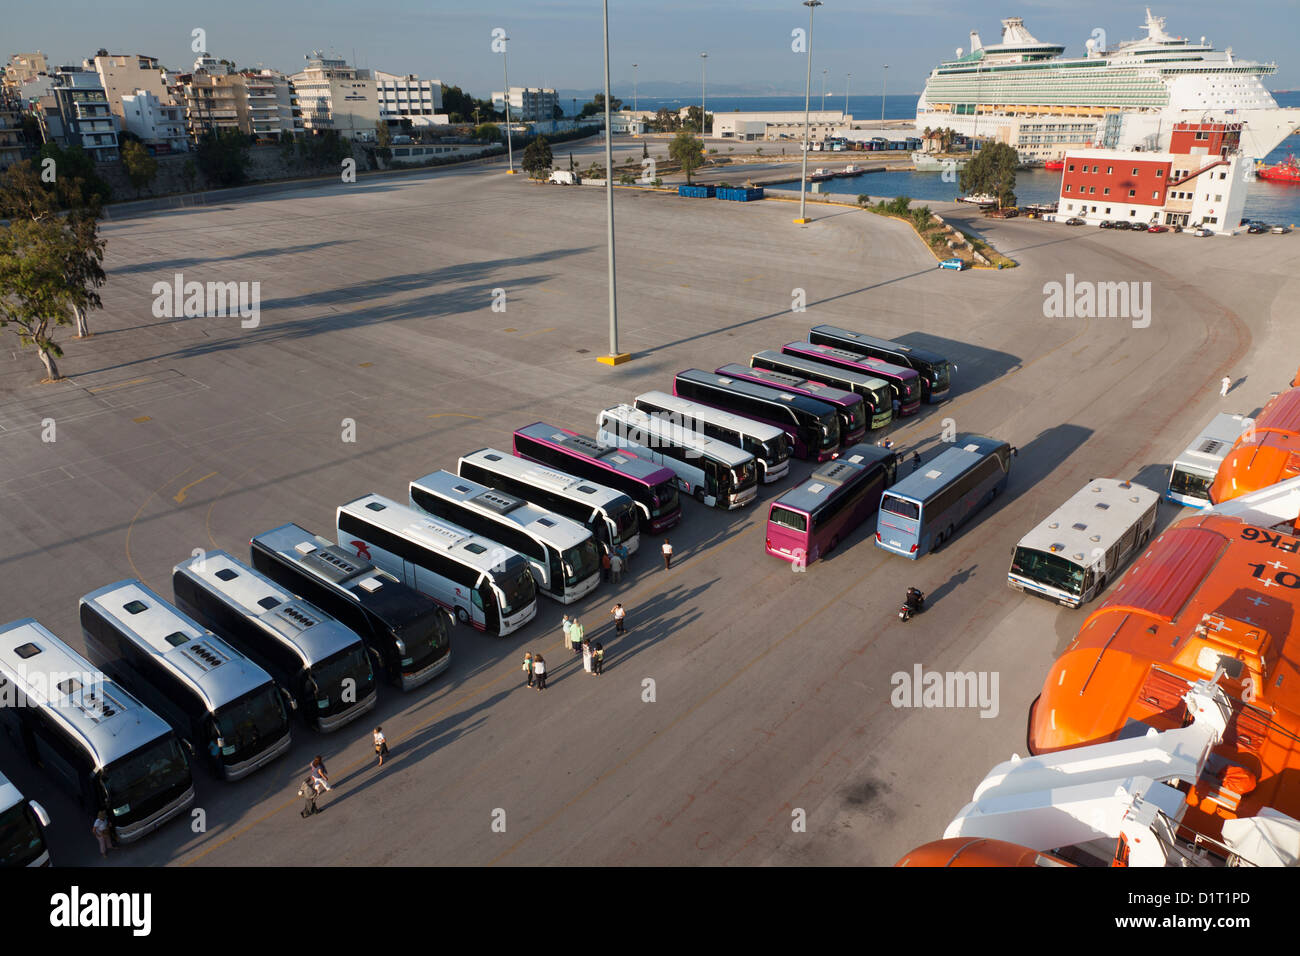 Day excursion coaches on the dockside at Piraeus Athens Stock Photo